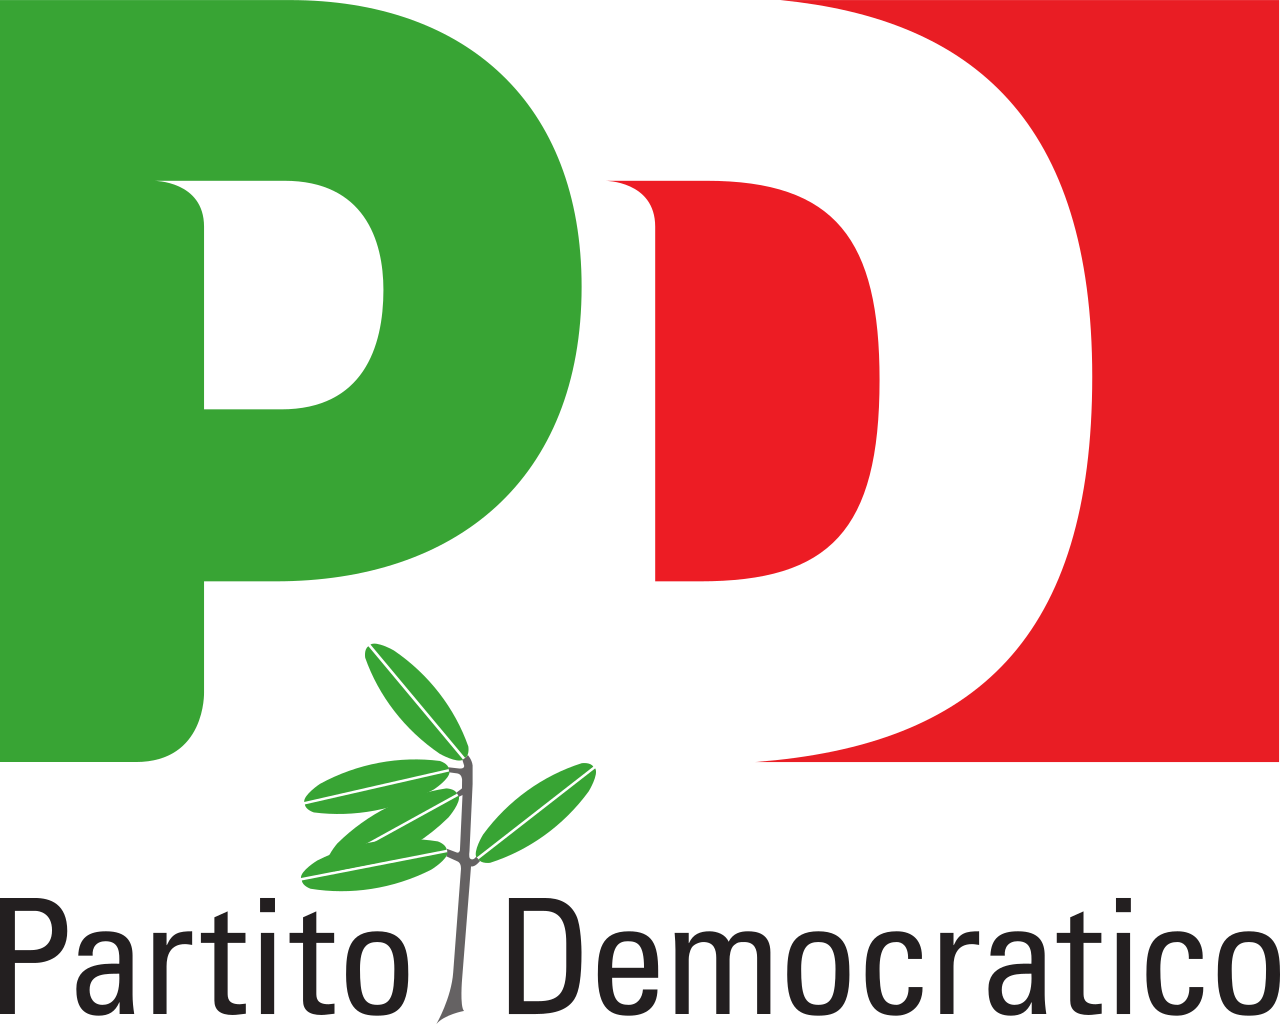 Primarie PD. Anche ad Enna vince Zingaretti con il 67,51%, Martina 7,48% e Giachetti 9,35% – Votanti 4.364